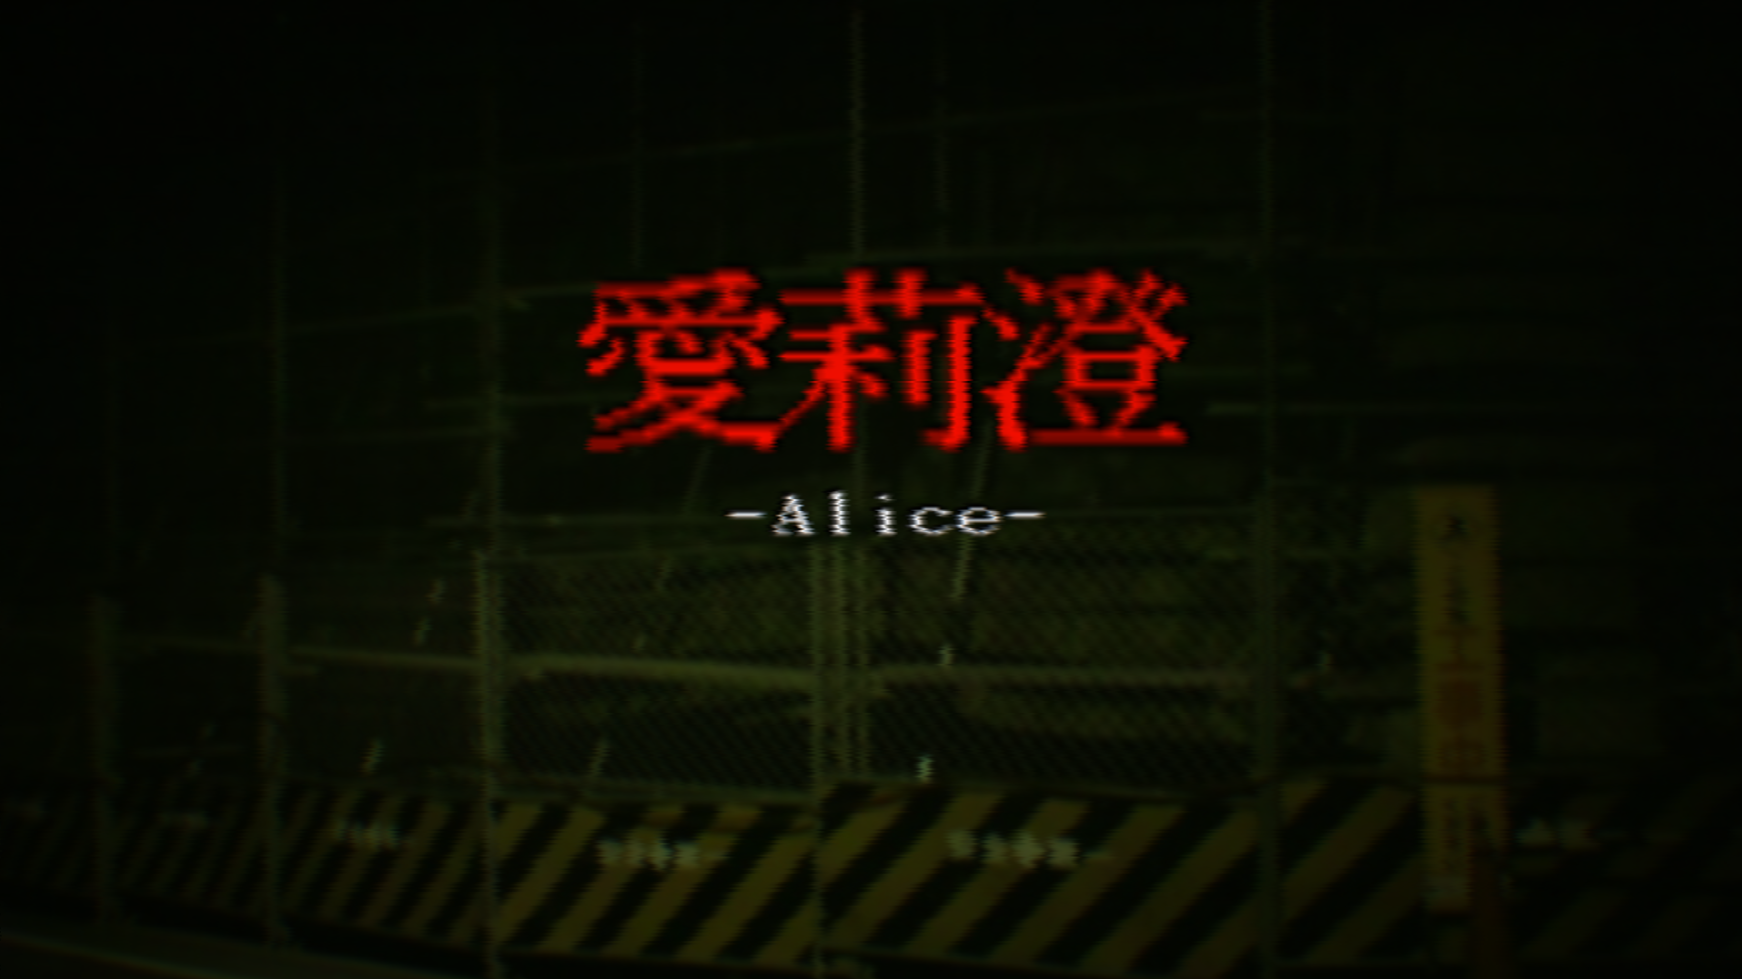 無料体験版 3dホラーゲーム Alice 愛莉澄 のリリース Alis